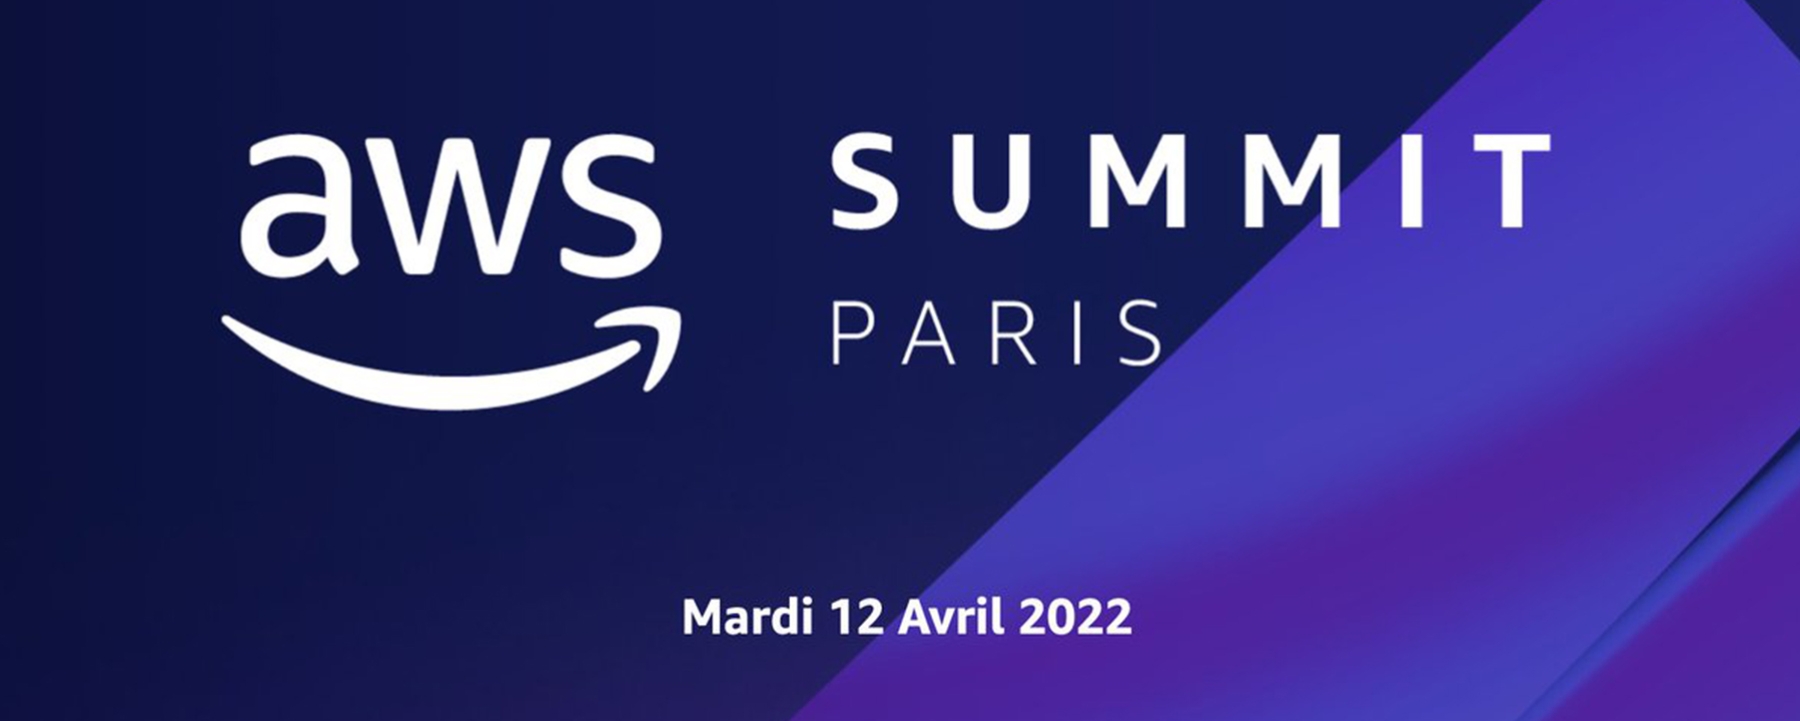 Aws Summit Paris by Amazon